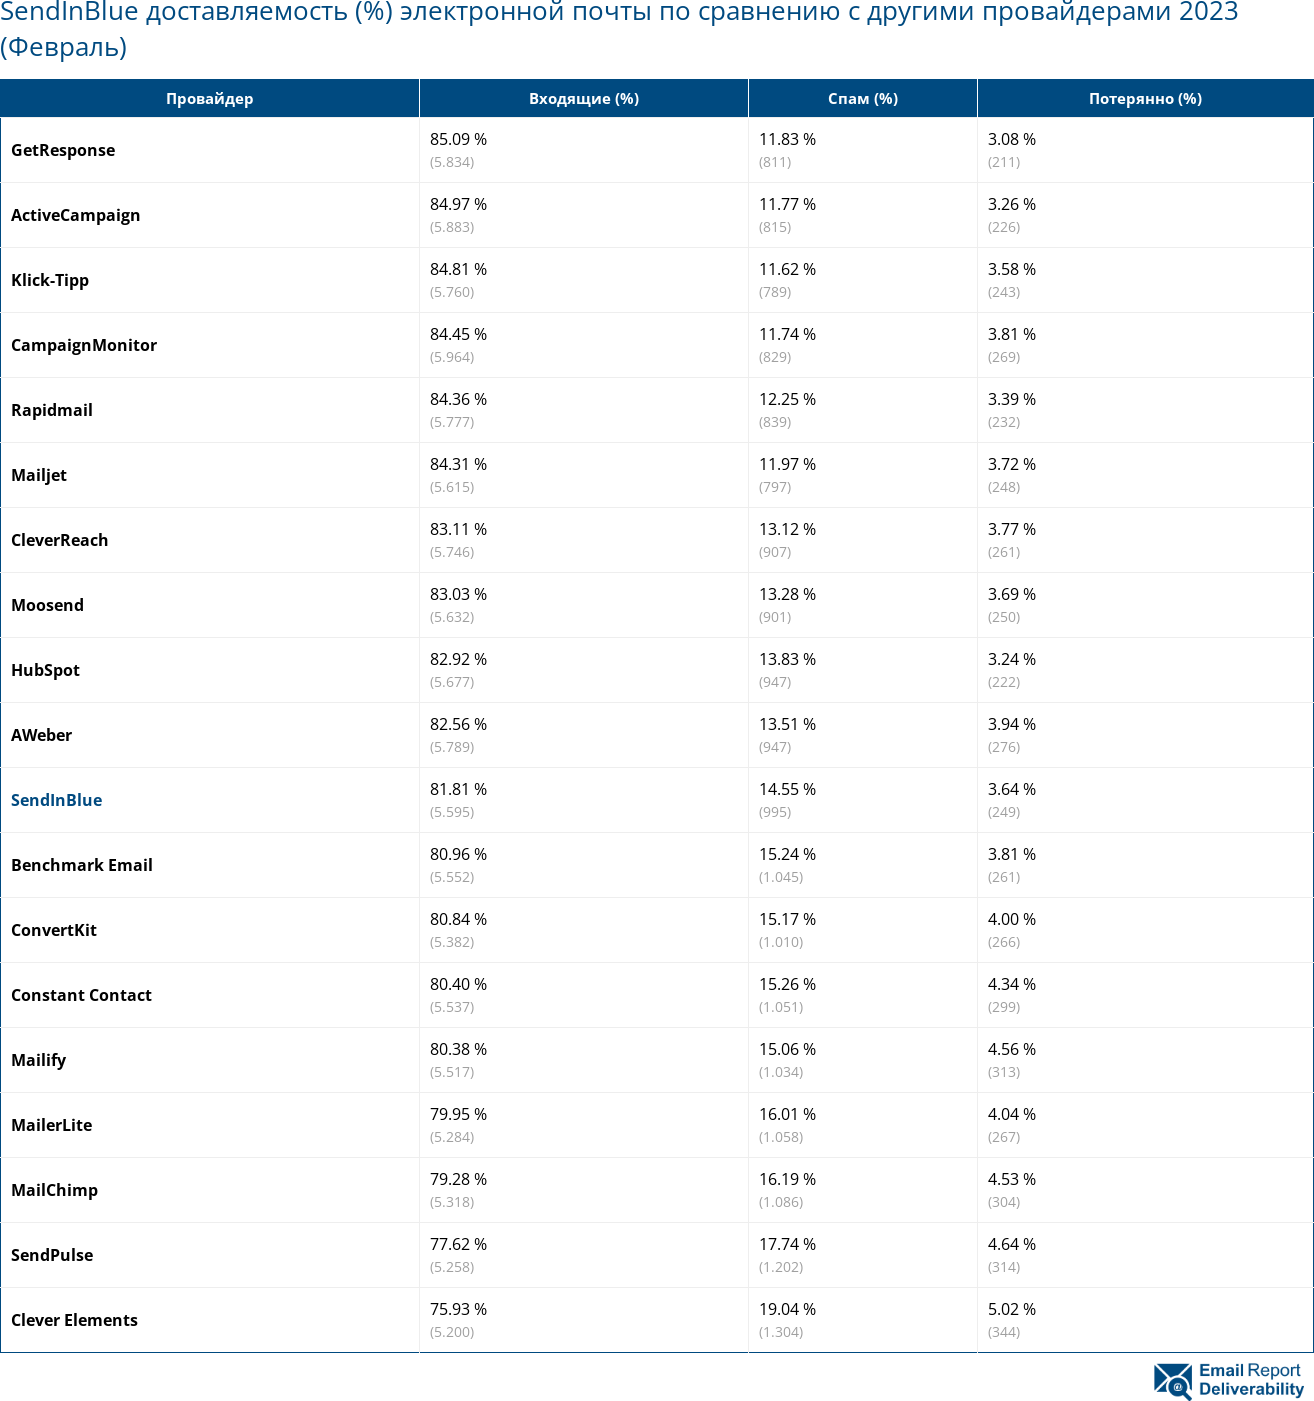 SendInBlue доставляемость (%) электронной почты по сравнению с другими провайдерами 2023 (Февраль)